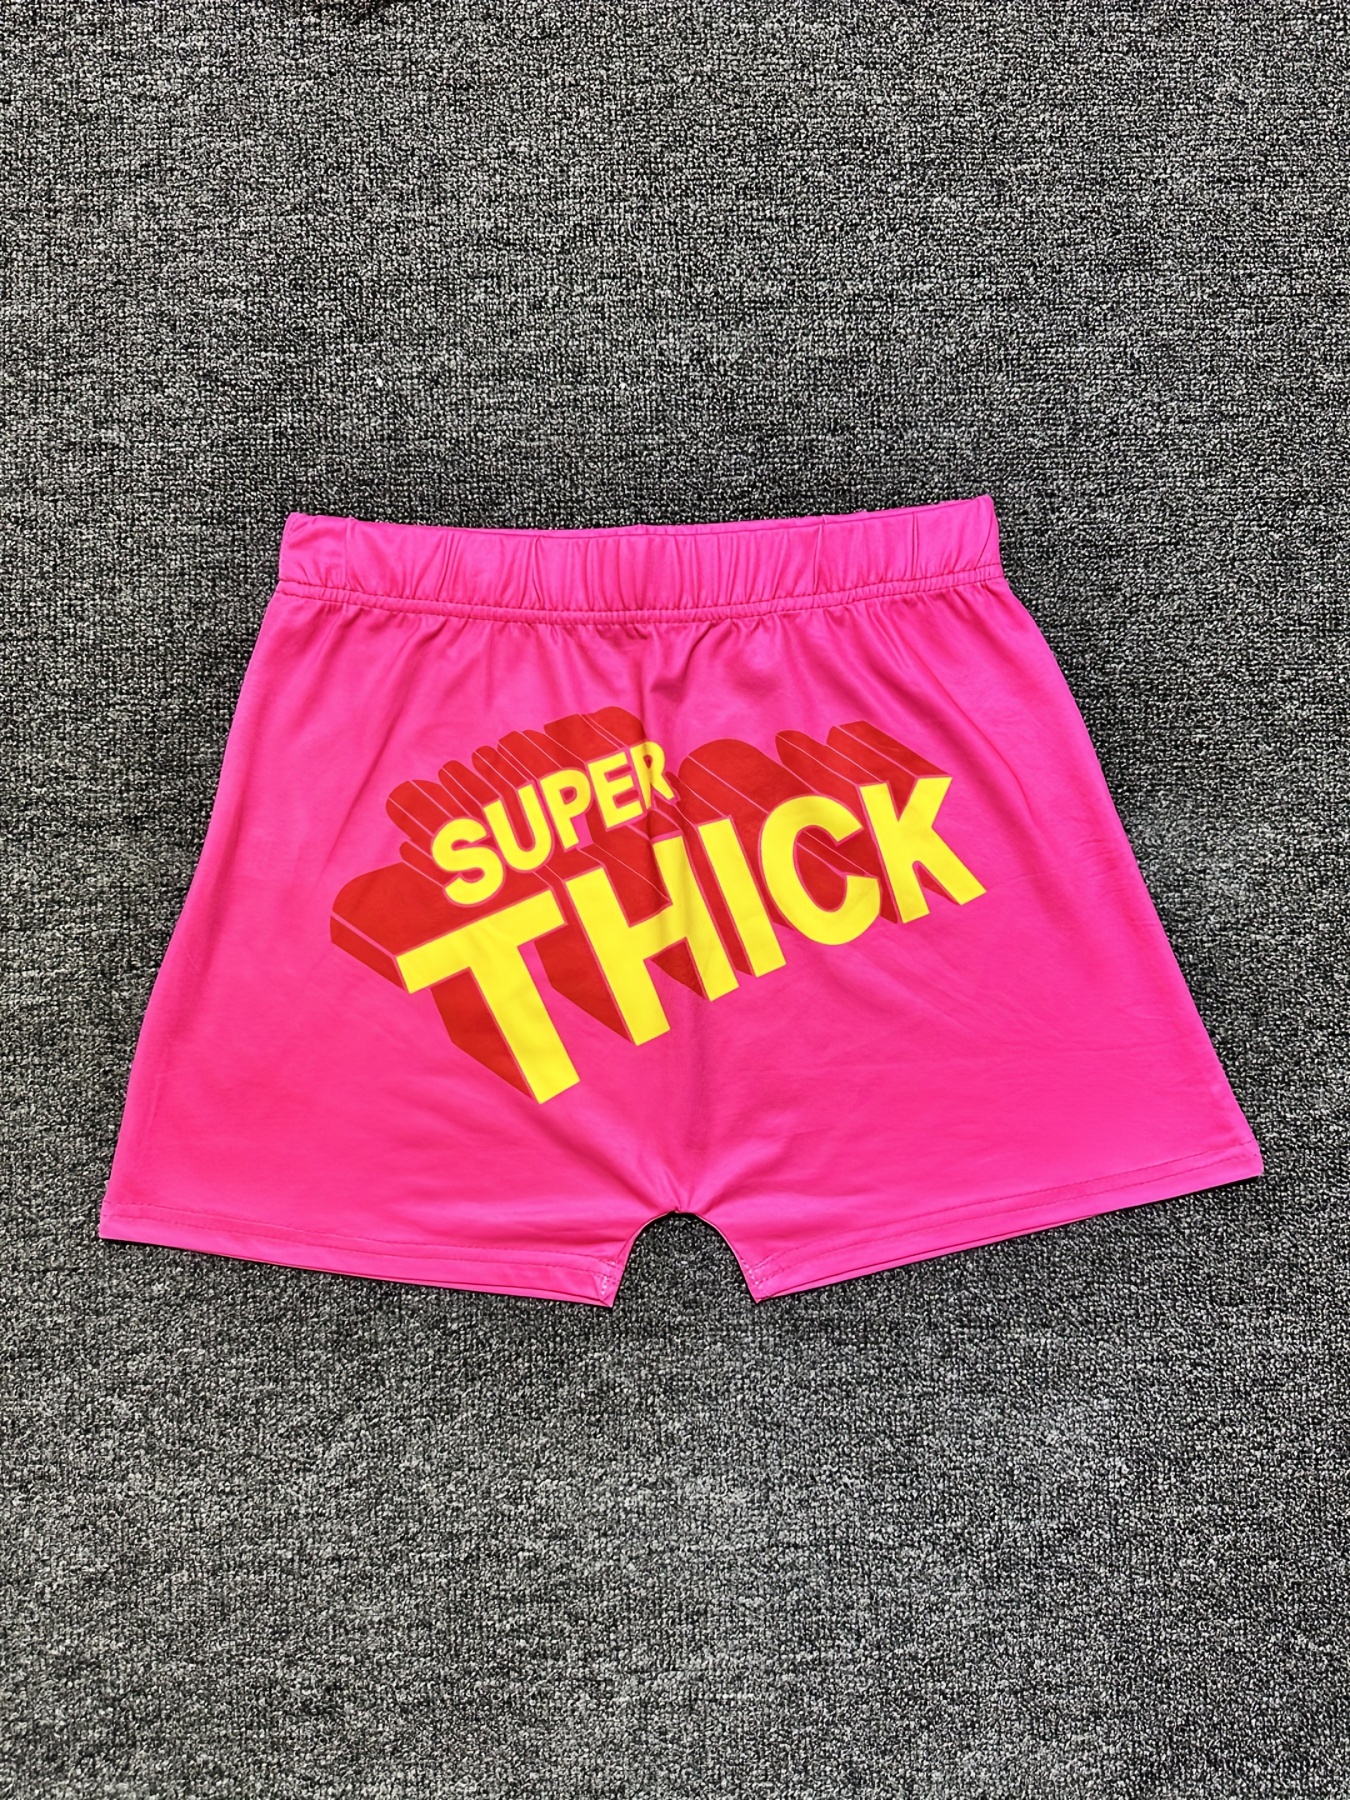 Pantalones cortos deportivos con letras rosas para mujer, Shorts